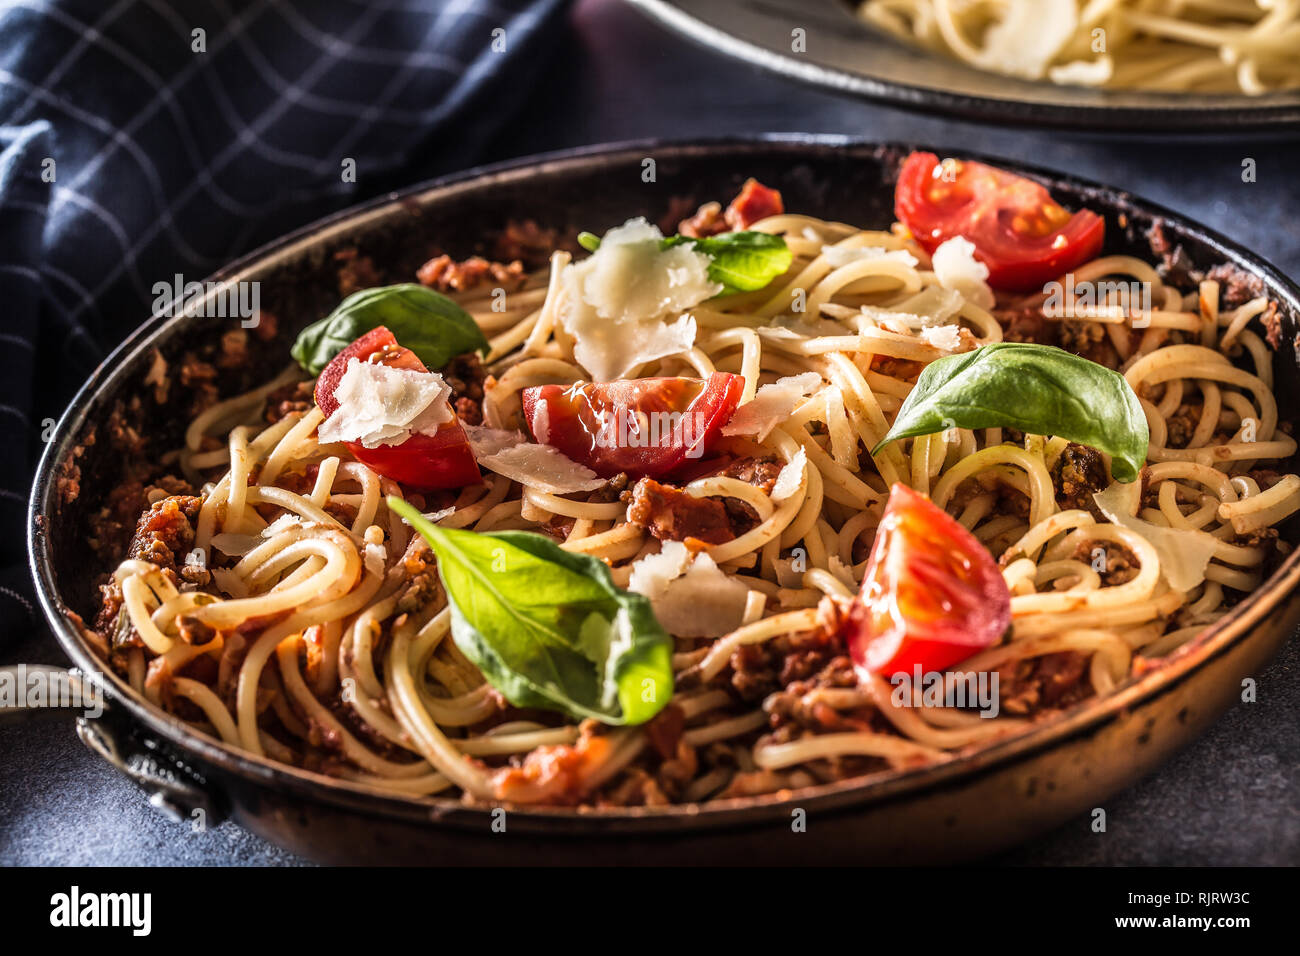 La pasta italiana spaghetti alla bolognese vecchia in padella con pomodori formaggio parmigiano e basilico Foto Stock